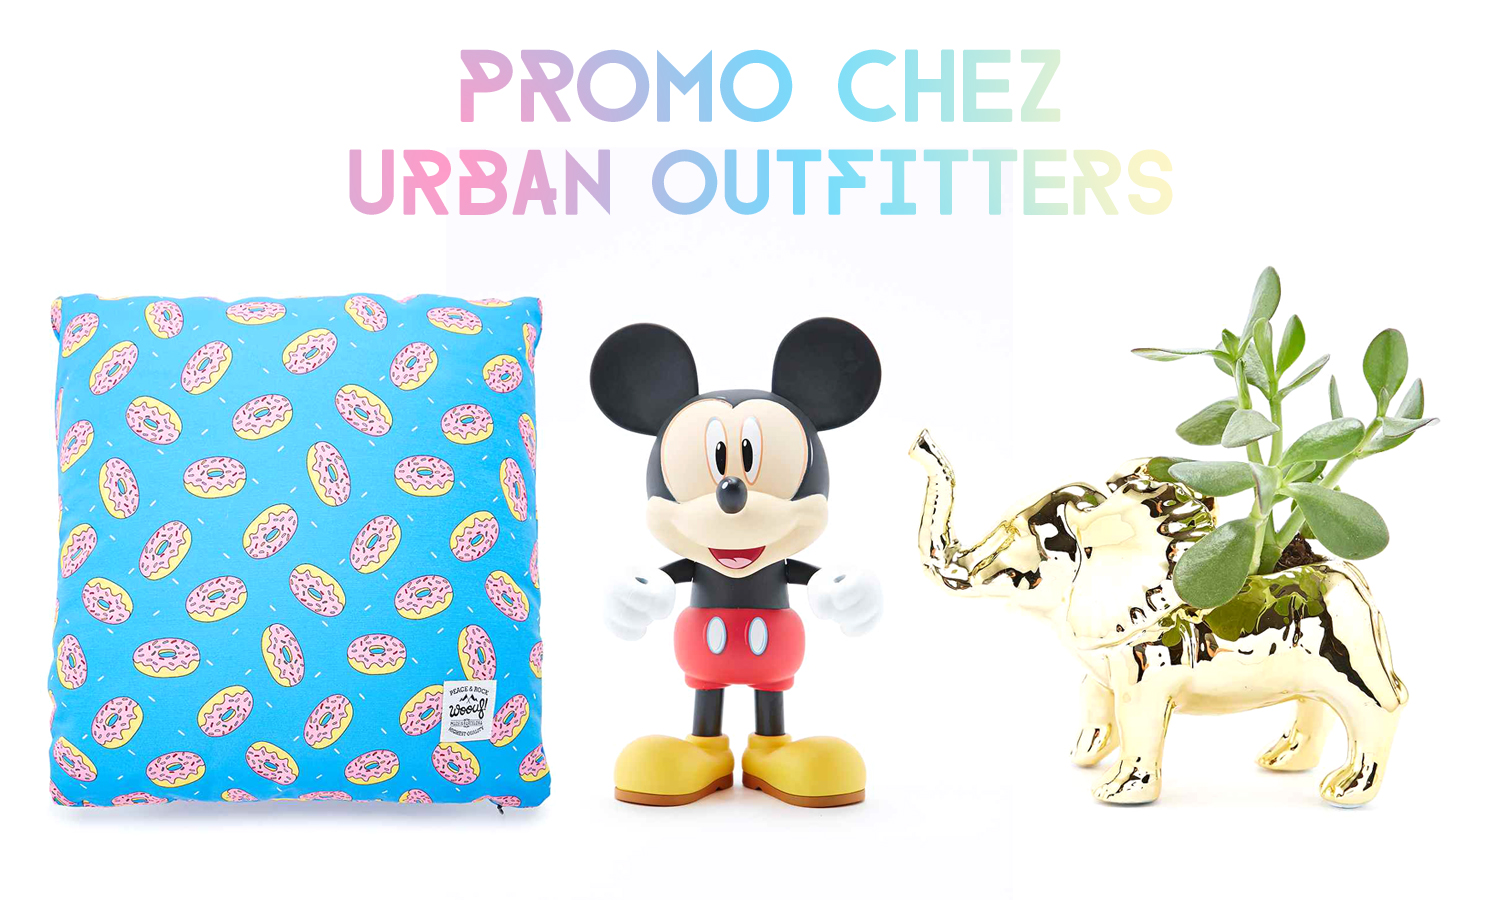 Ma wishlist spéciale promo chez Urban Outfitters